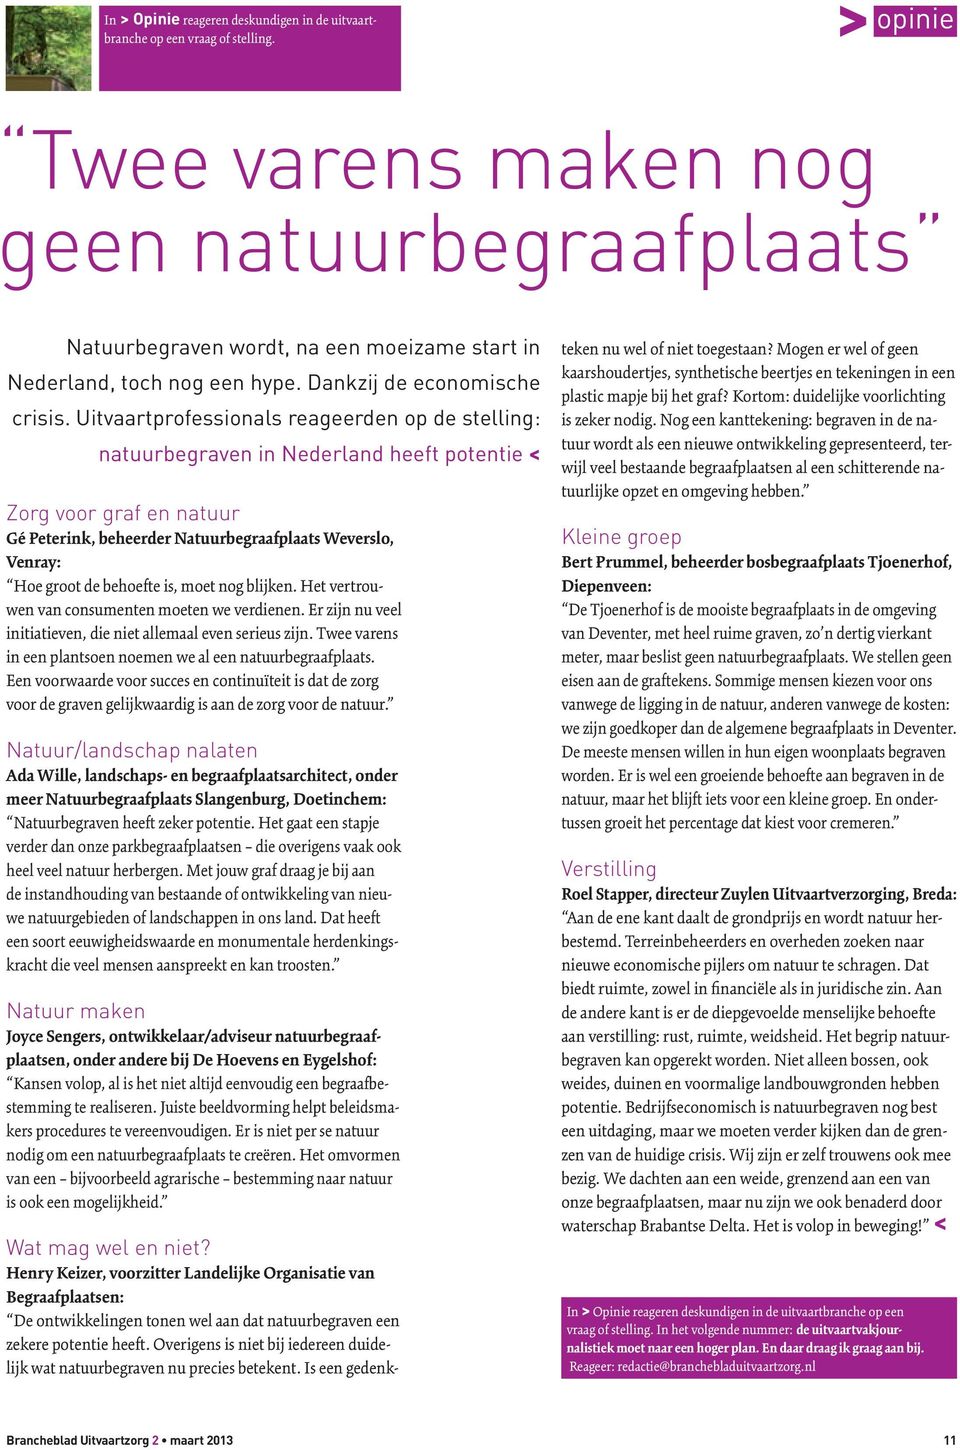 Uitvaartprofessionals reageerden op de stelling: natuurbegraven in Nederland heeft potentie < Zorg voor graf en natuur Gé Peterink, beheerder Natuurbegraafplaats Weverslo, Venray: Hoe groot de